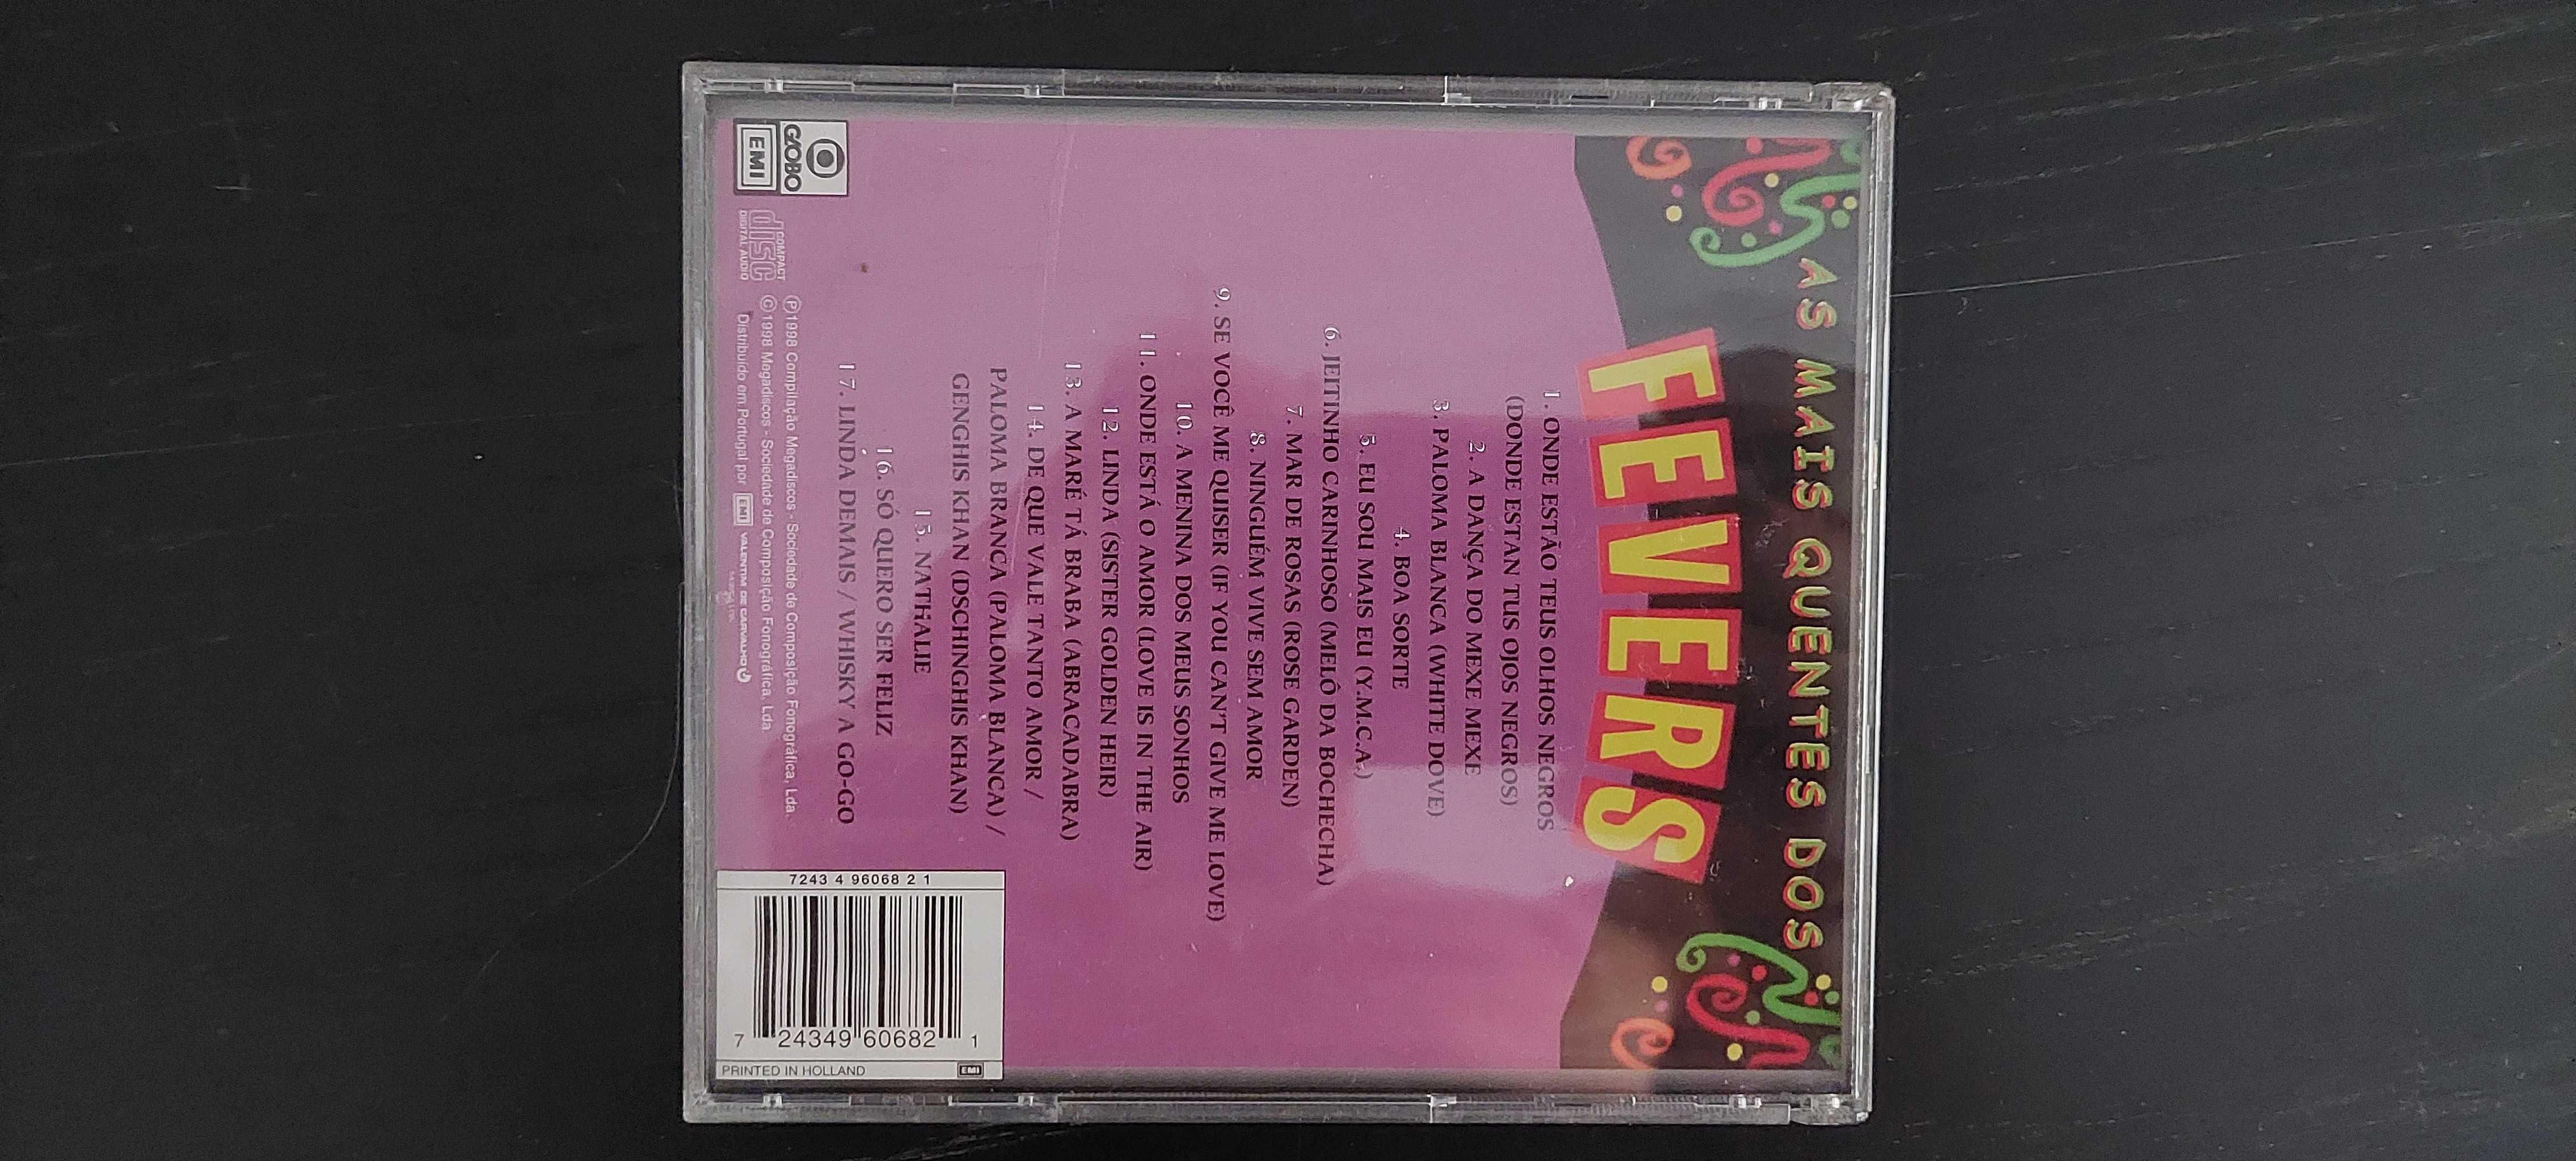 CD Original As mais quentes dos fevers